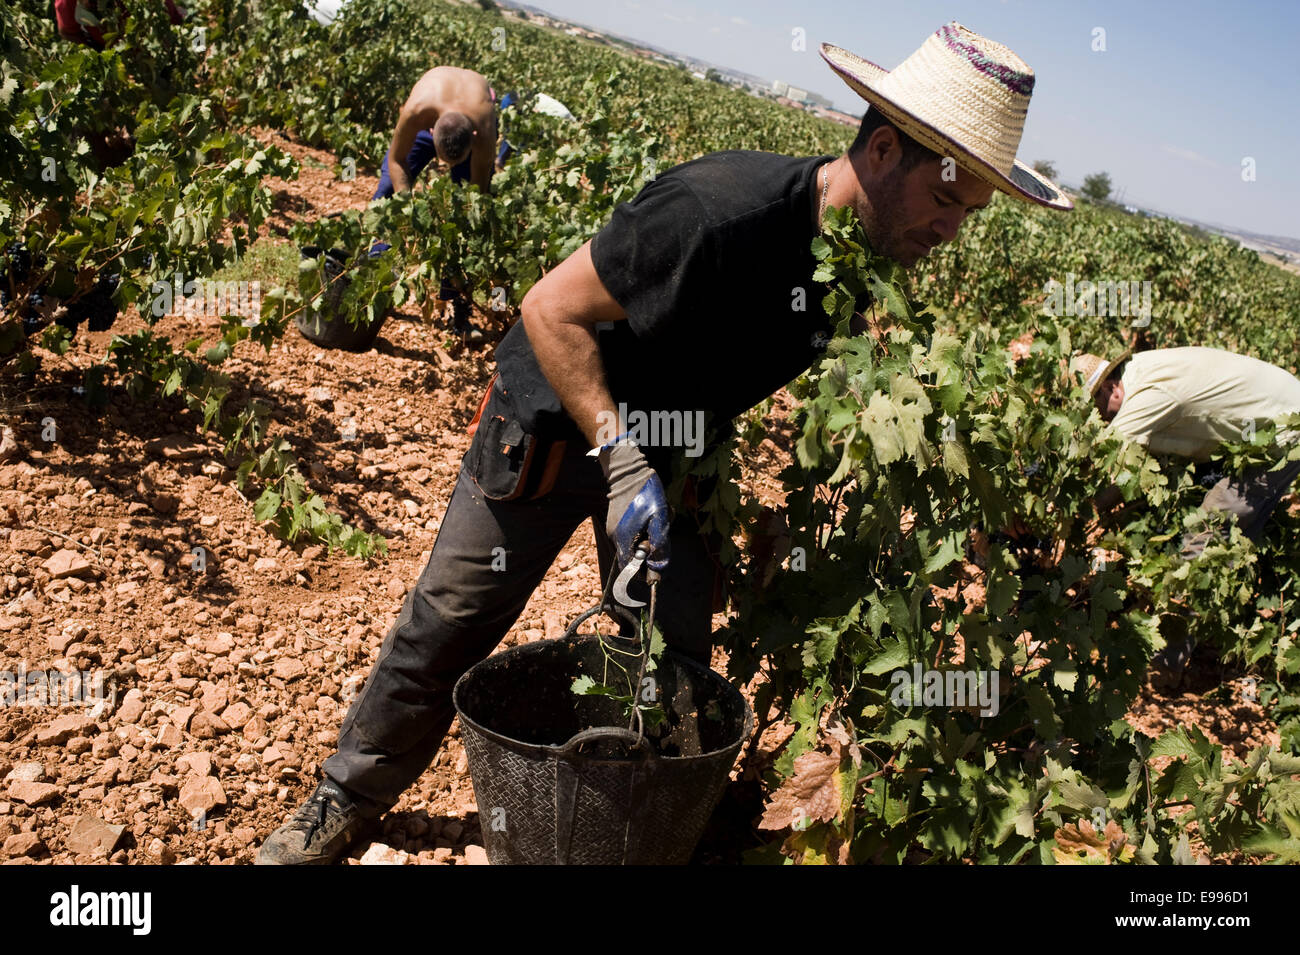 Travailleurs temporaires ramasser les raisins de tempranillo à Valdepeñas, Ciudad Real, Espagne. vignoble groupe de travail saisonnier Travailleur agricole Banque D'Images